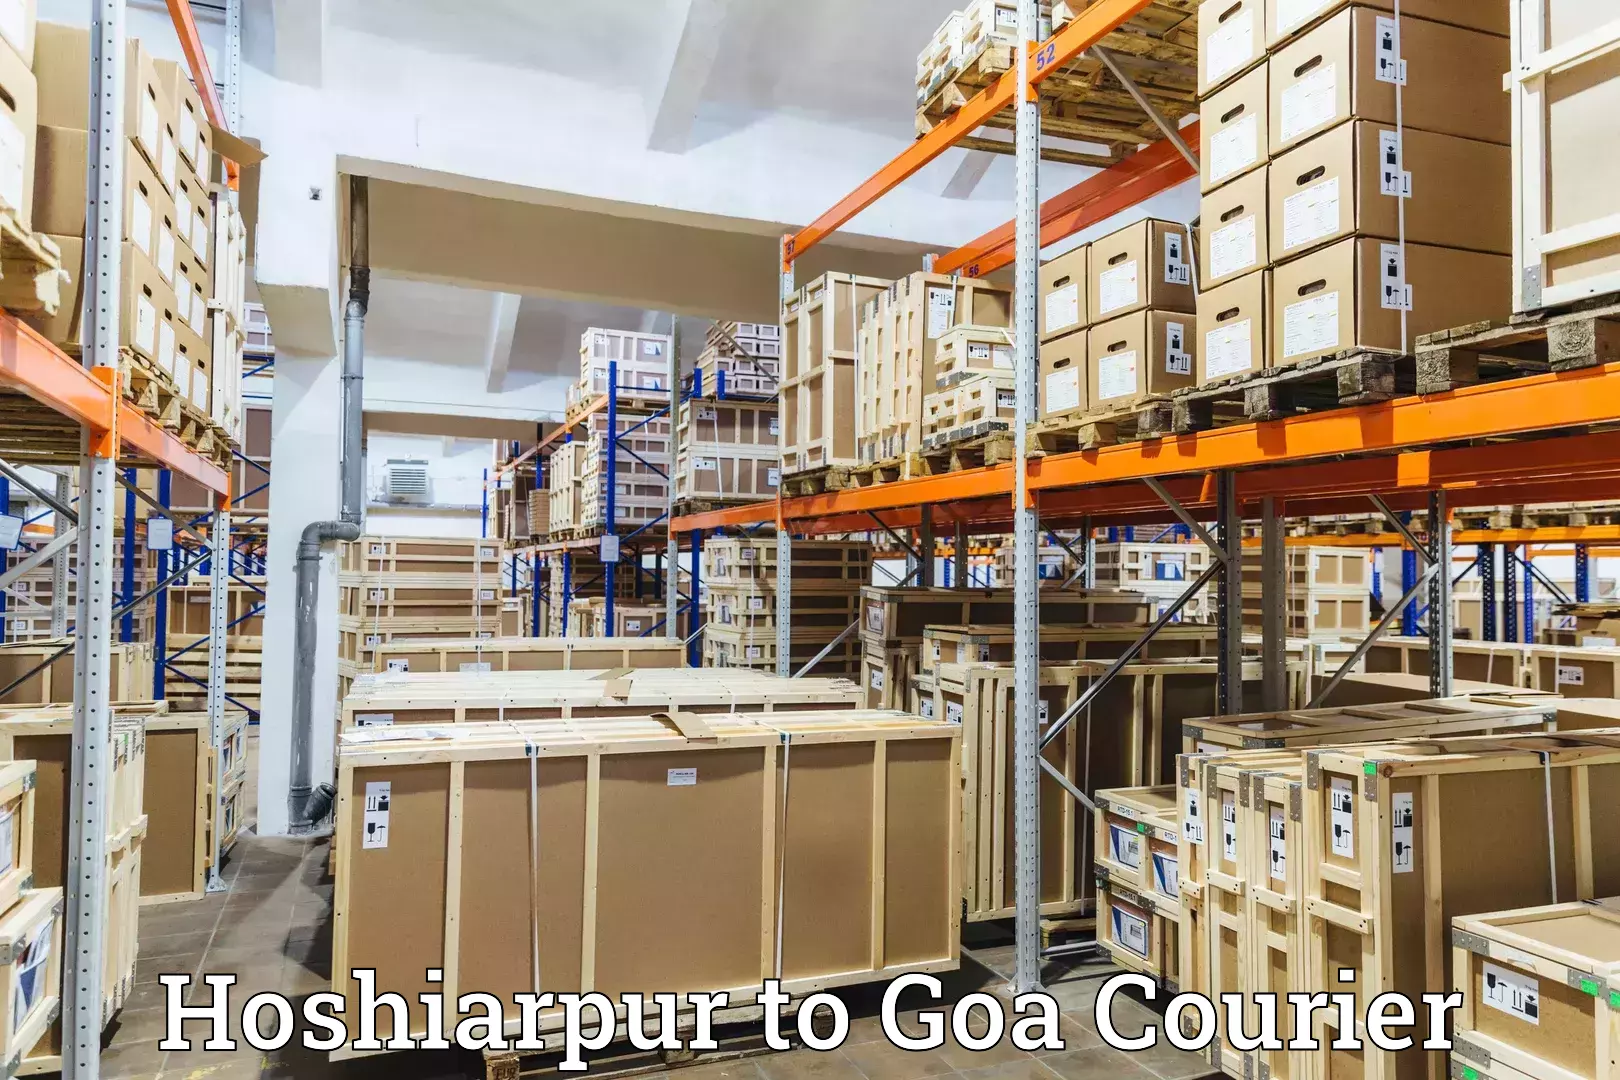 Digital courier platforms Hoshiarpur to Margao